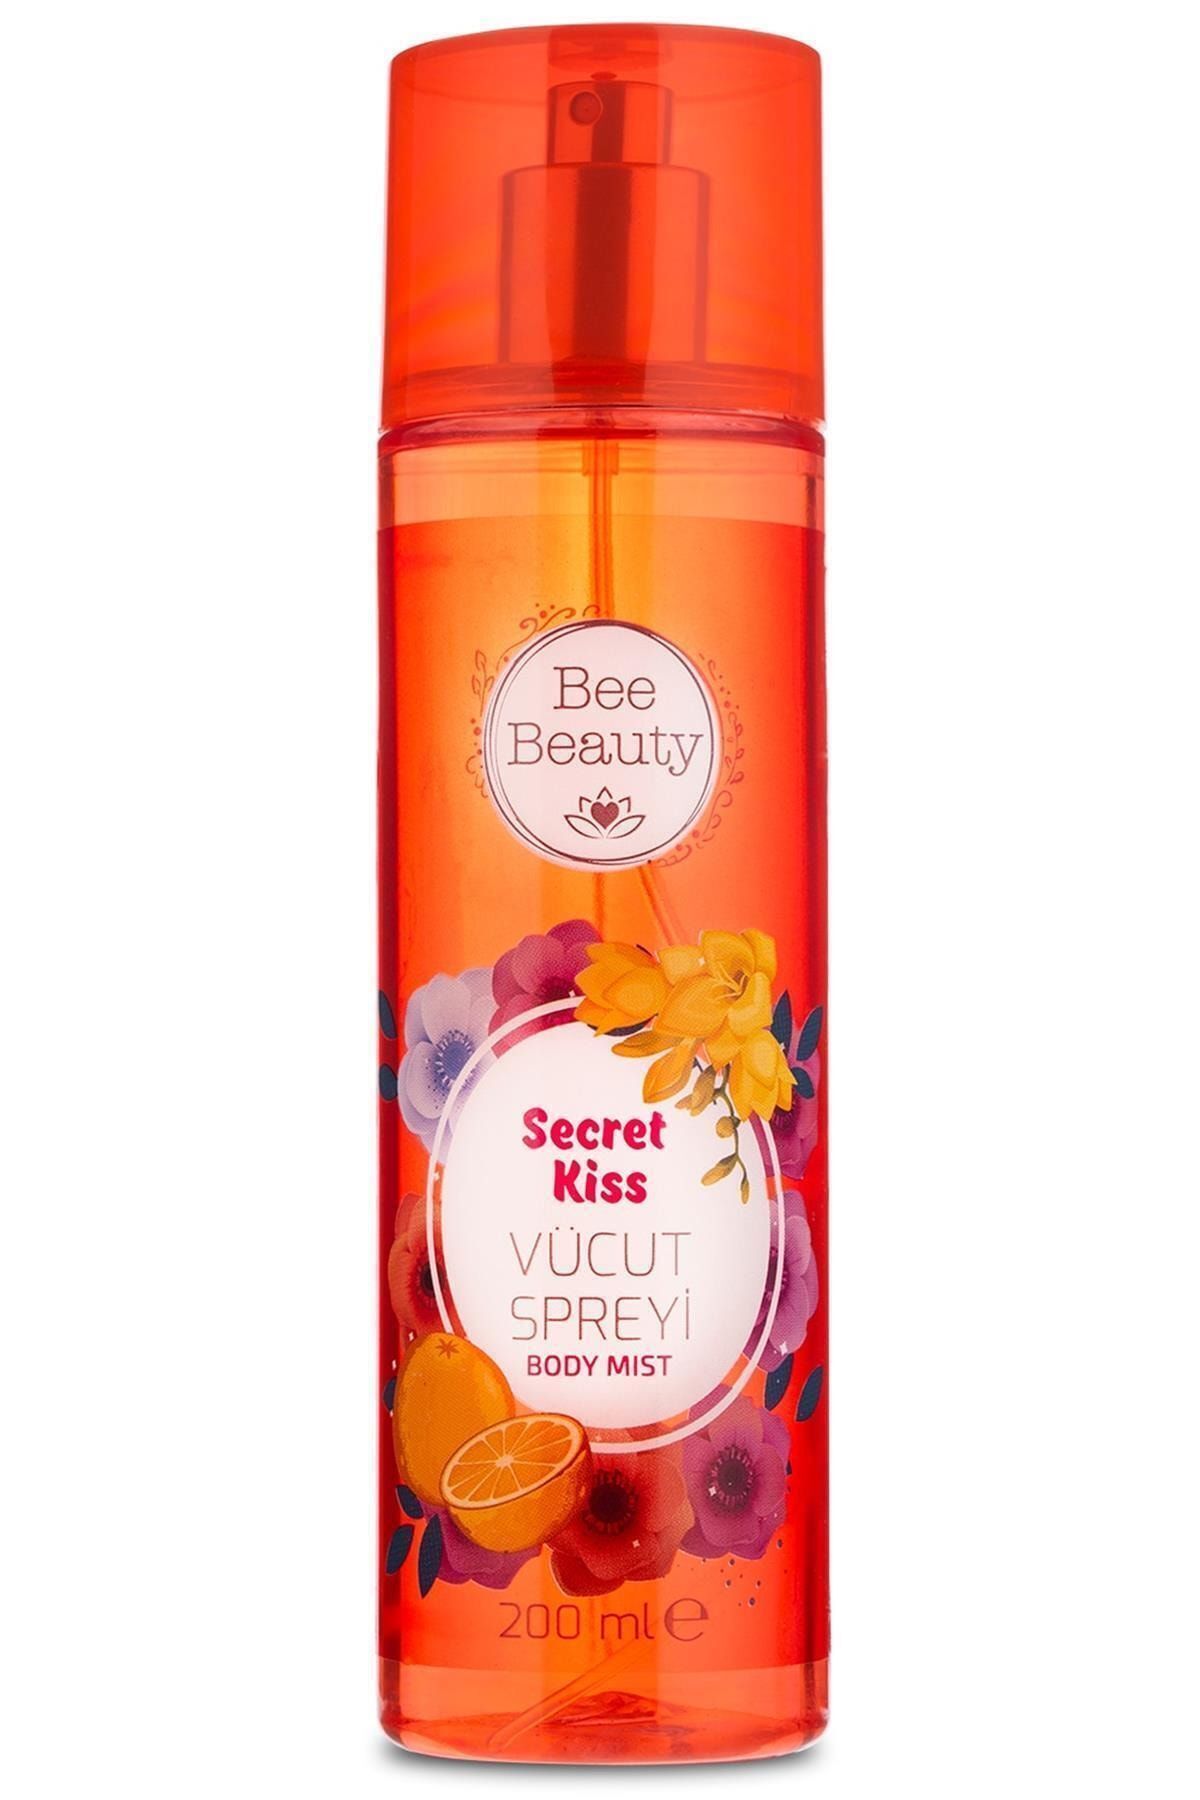 Bee Beauty Marka: Secret Kiss Vücut Spreyi 200 Ml Kategori: Parfüm